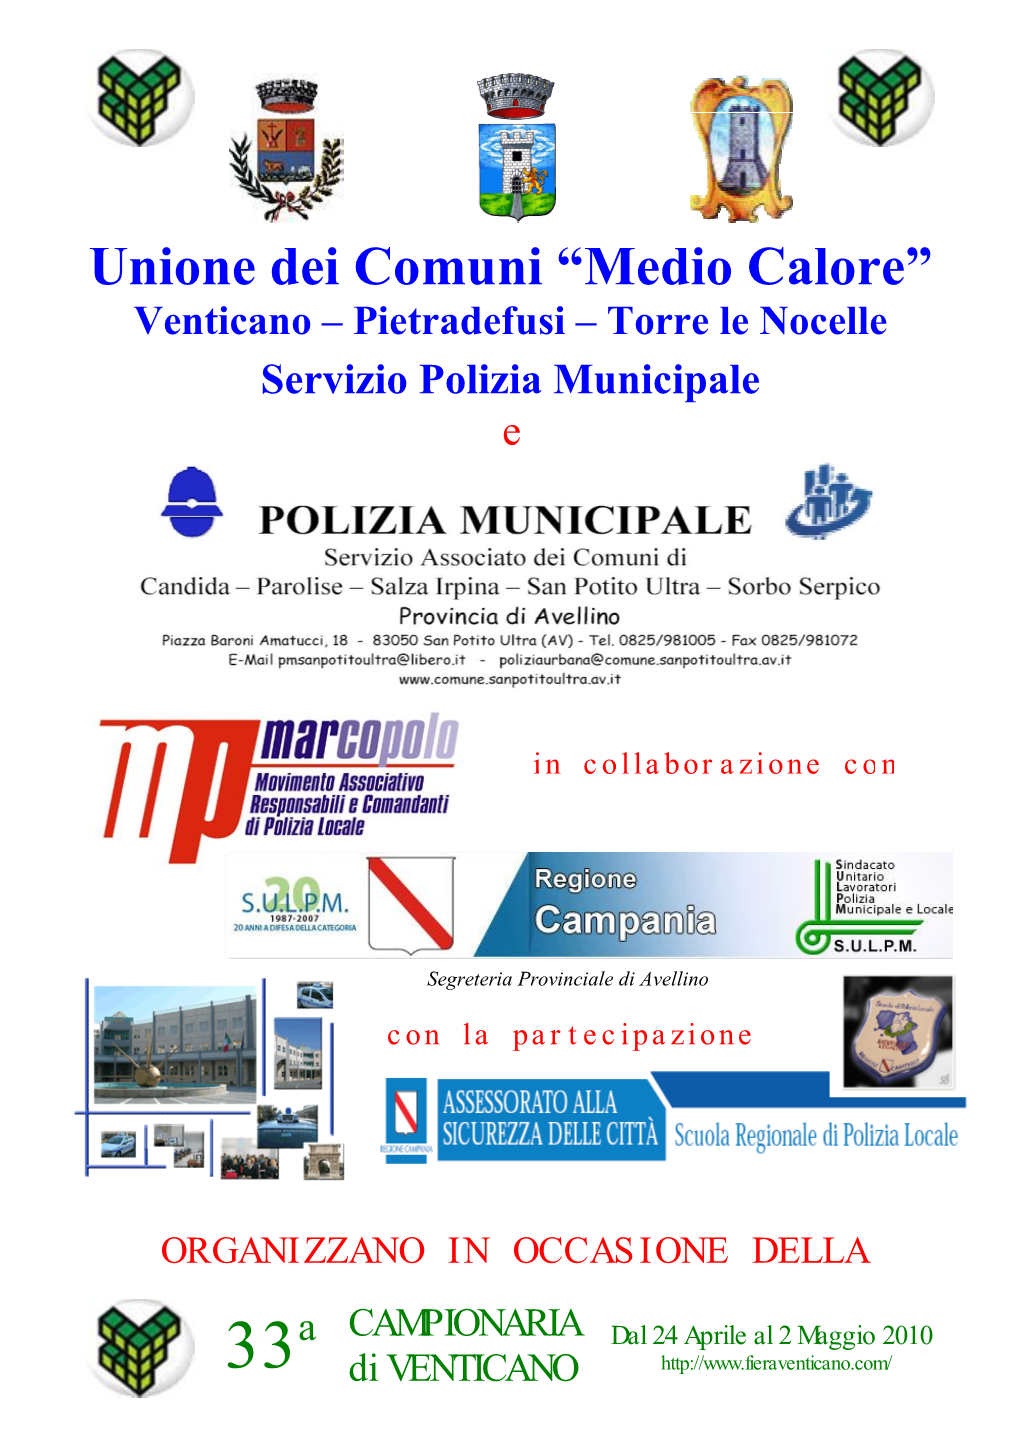 Unione Dei Comuni “Medio Calore” Venticano – Pietradefusi – Torre Le Nocelle